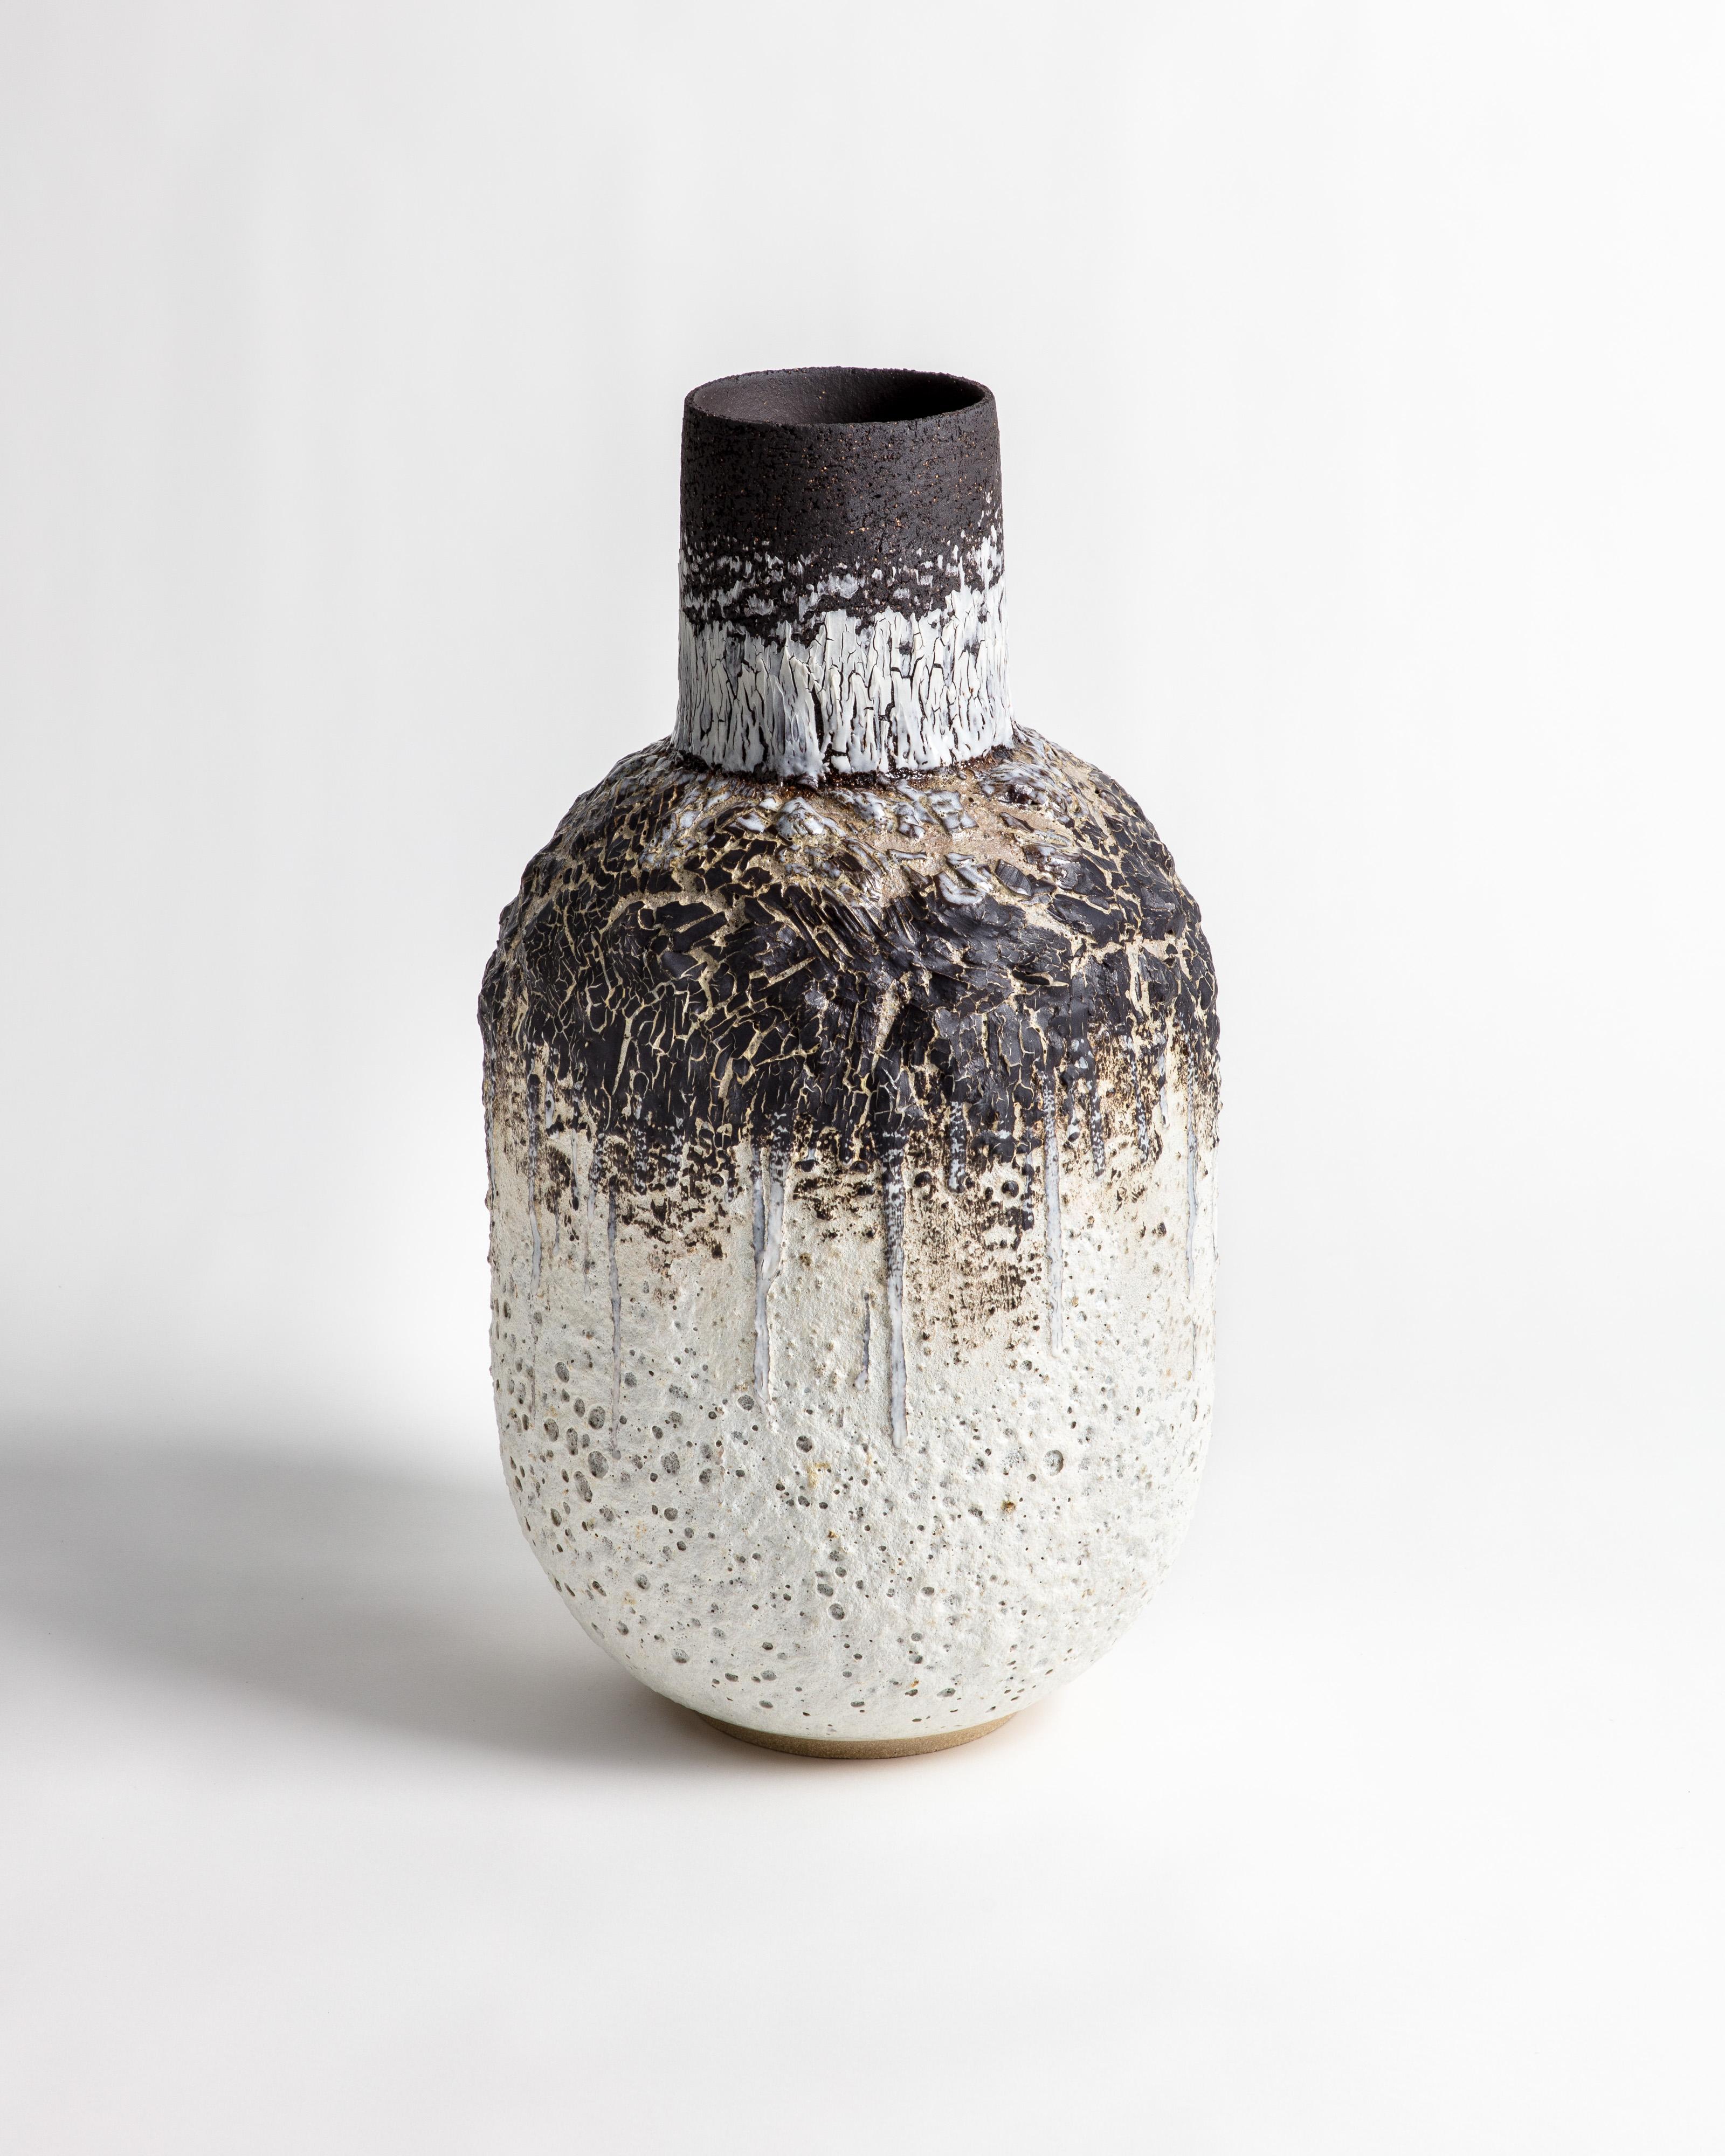 Grand récipient en forme de bouteille en grès blanc et noir et en porcelaine avec une glaçure volcanique texturée et un craquelé de porcelaine noire.

L'œuvre est construite à la main en utilisant une combinaison d'argiles noires et chamoisées en